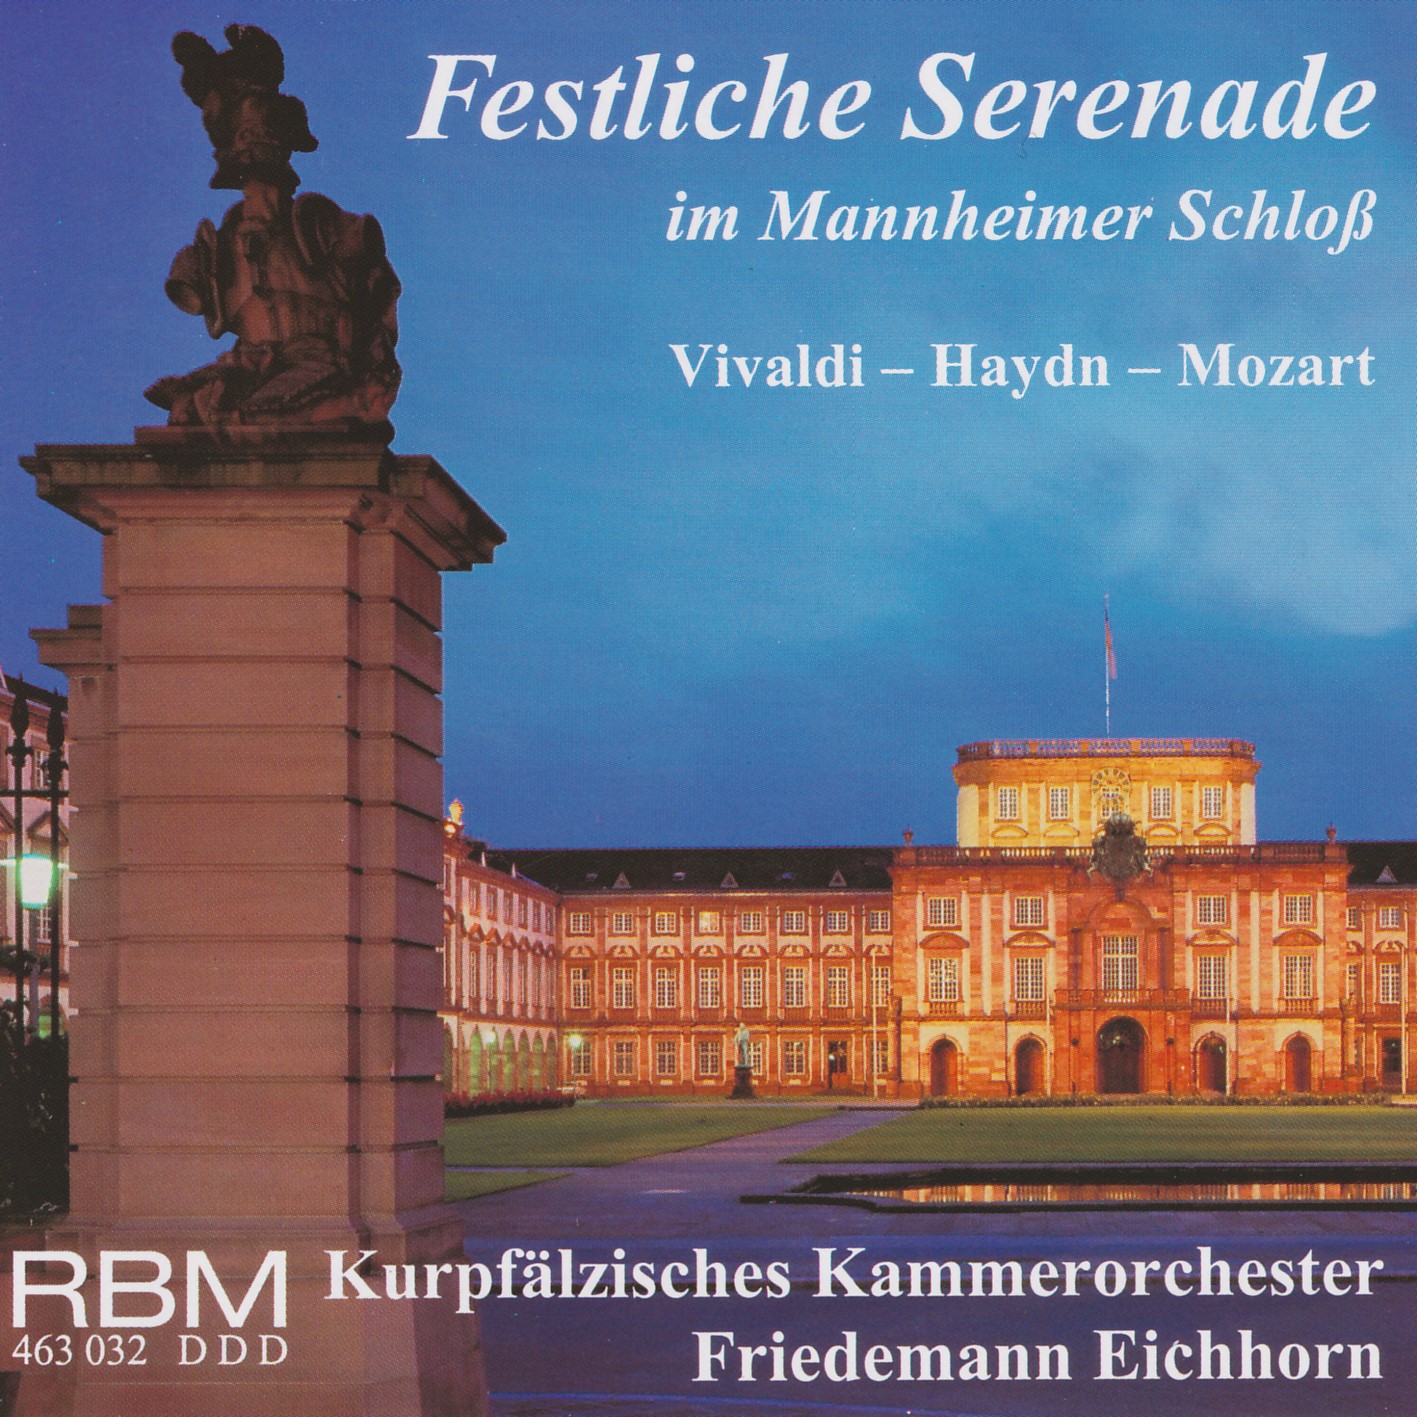 Festliche Serenade im Mannheimer Schloss